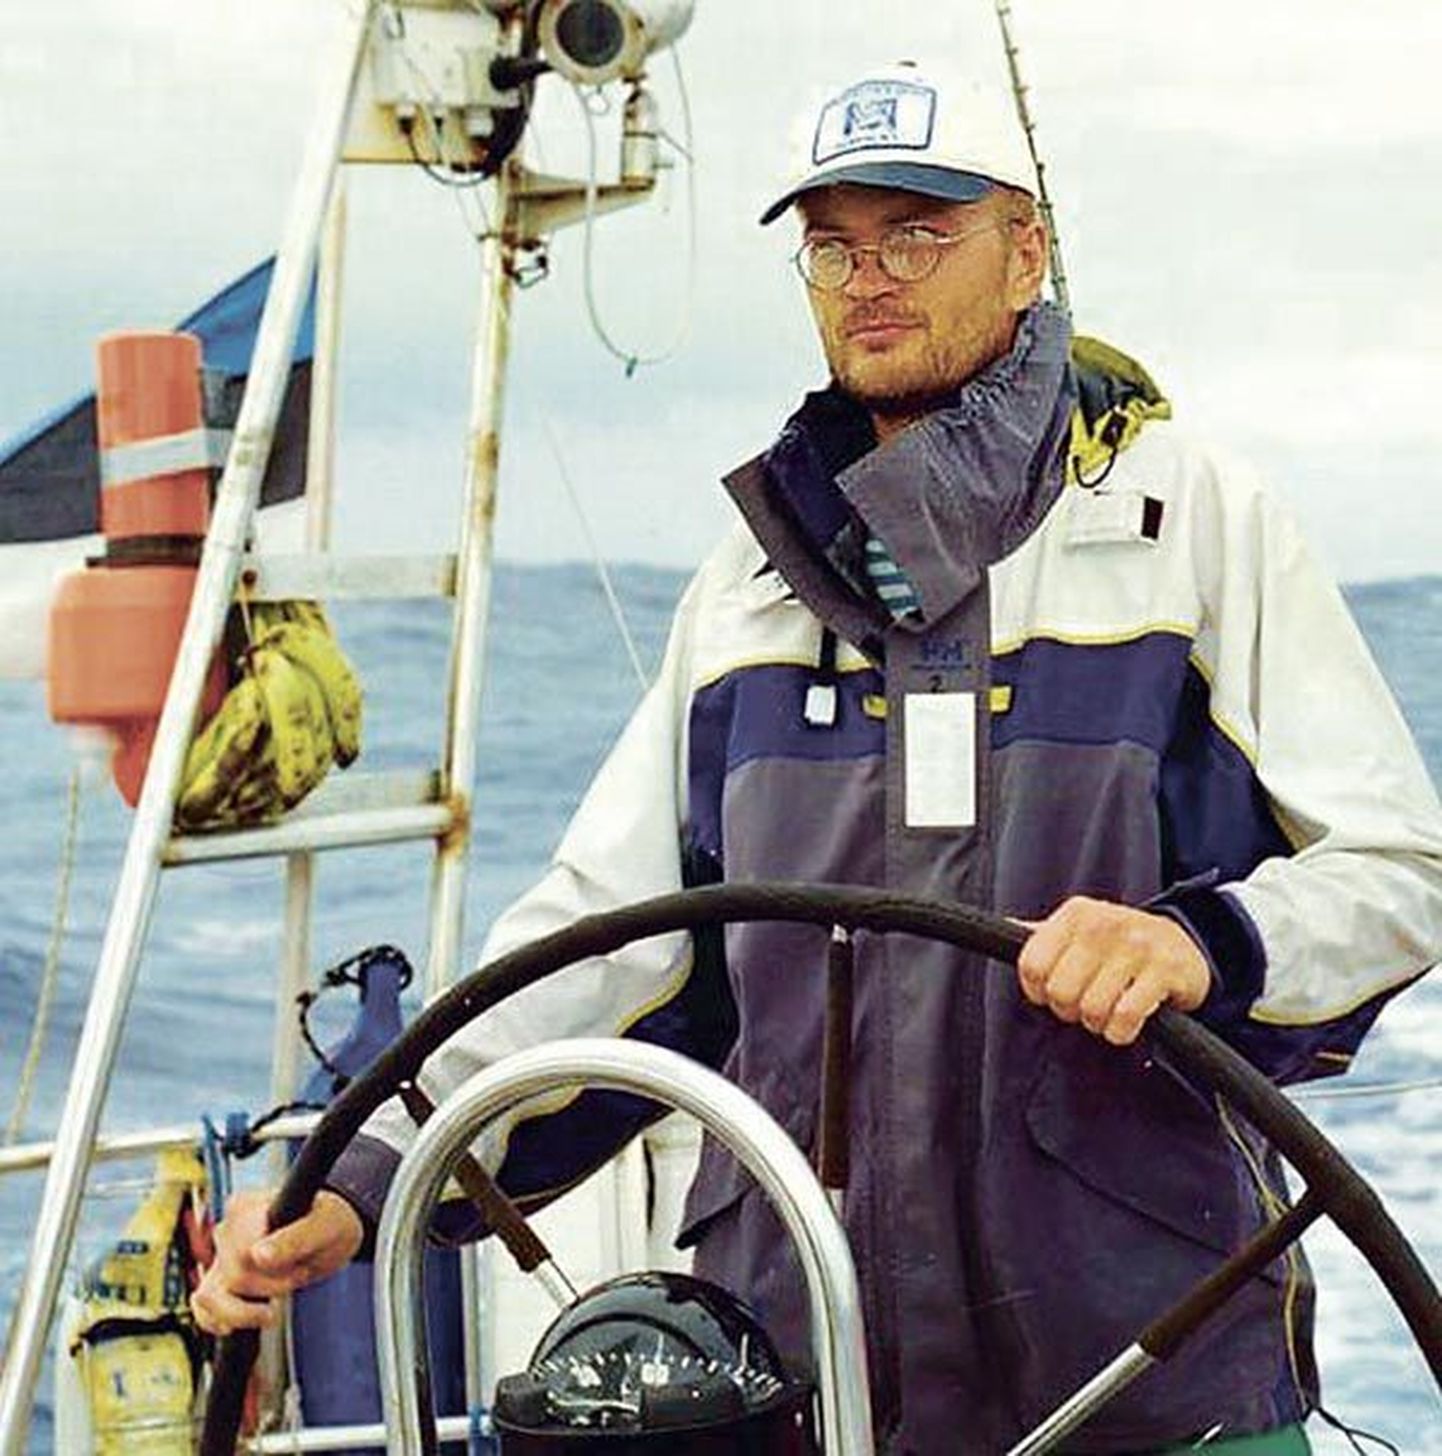 Eesti kõige väiksema avamerejahi kapten Janno Simm sai viis aastat tagasi India ja Atlandi ookeanil juhtida Eesti ümbermaailmapurjekat Lennuk.